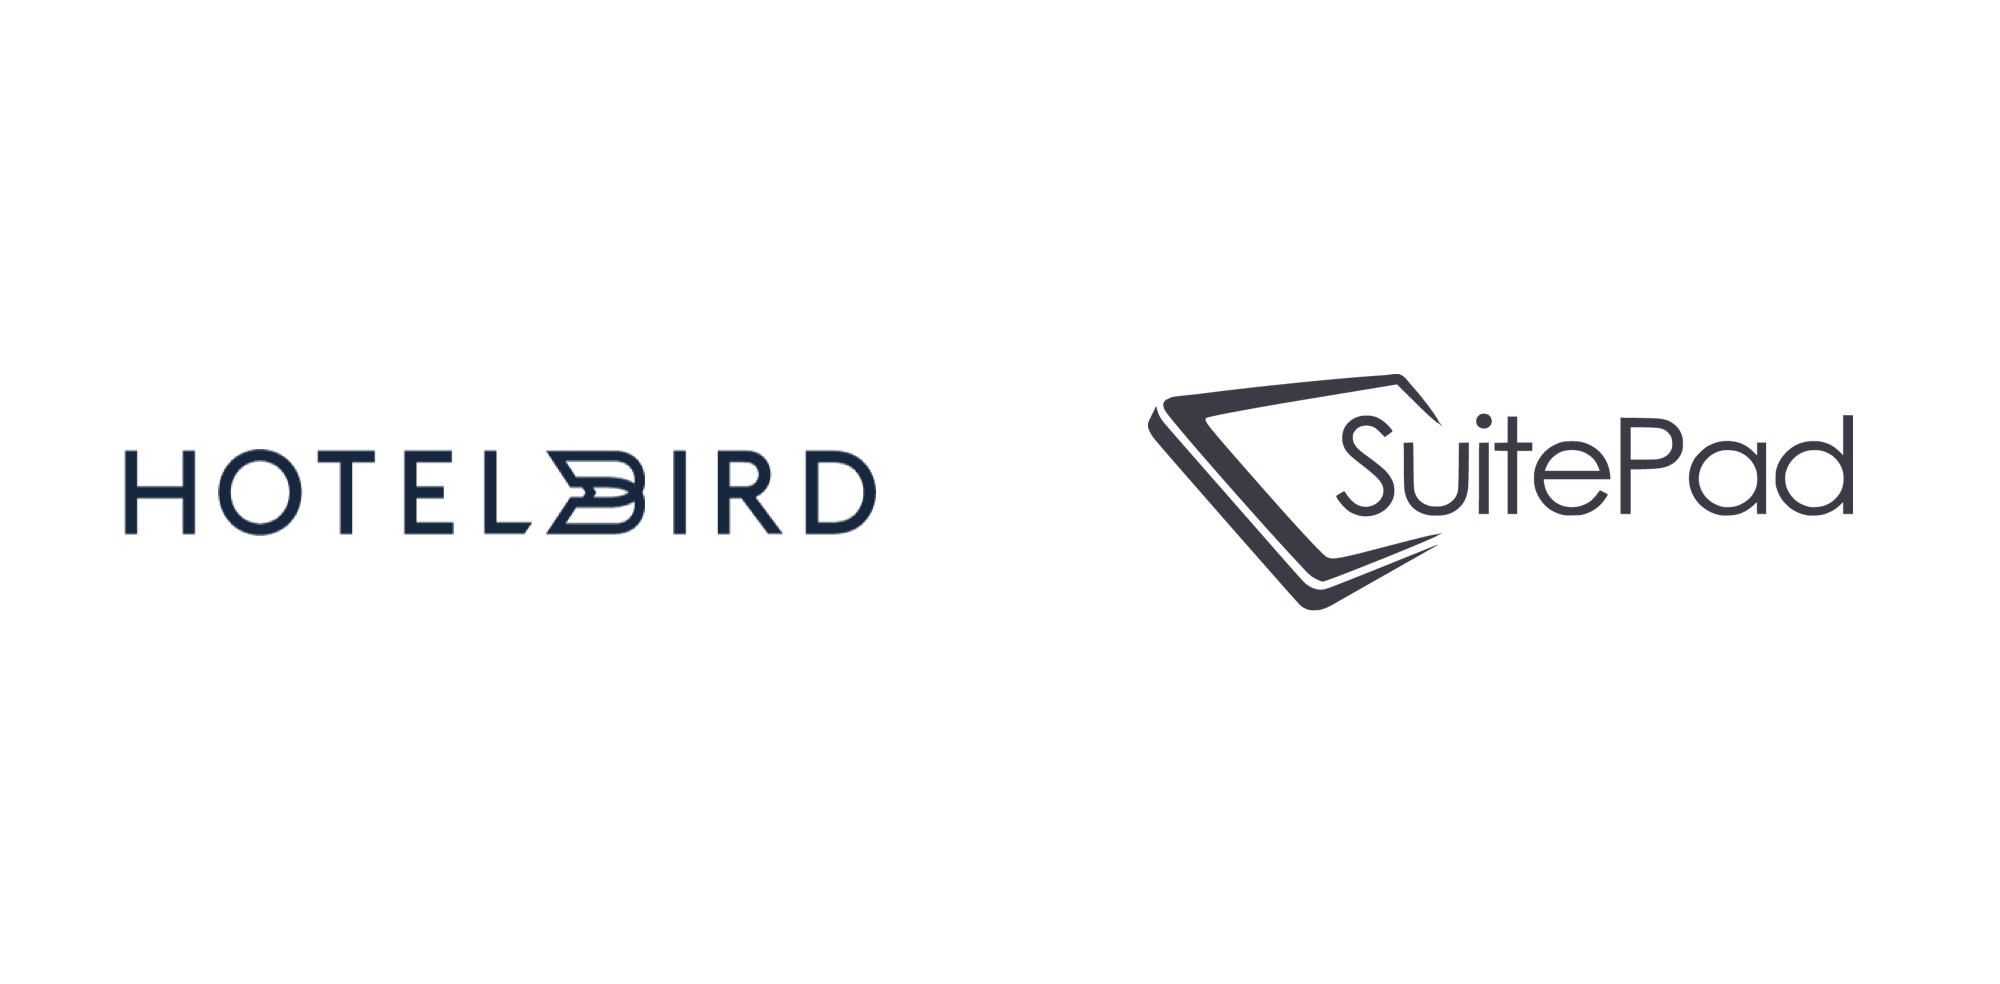 hotelbird and SuitePad logos